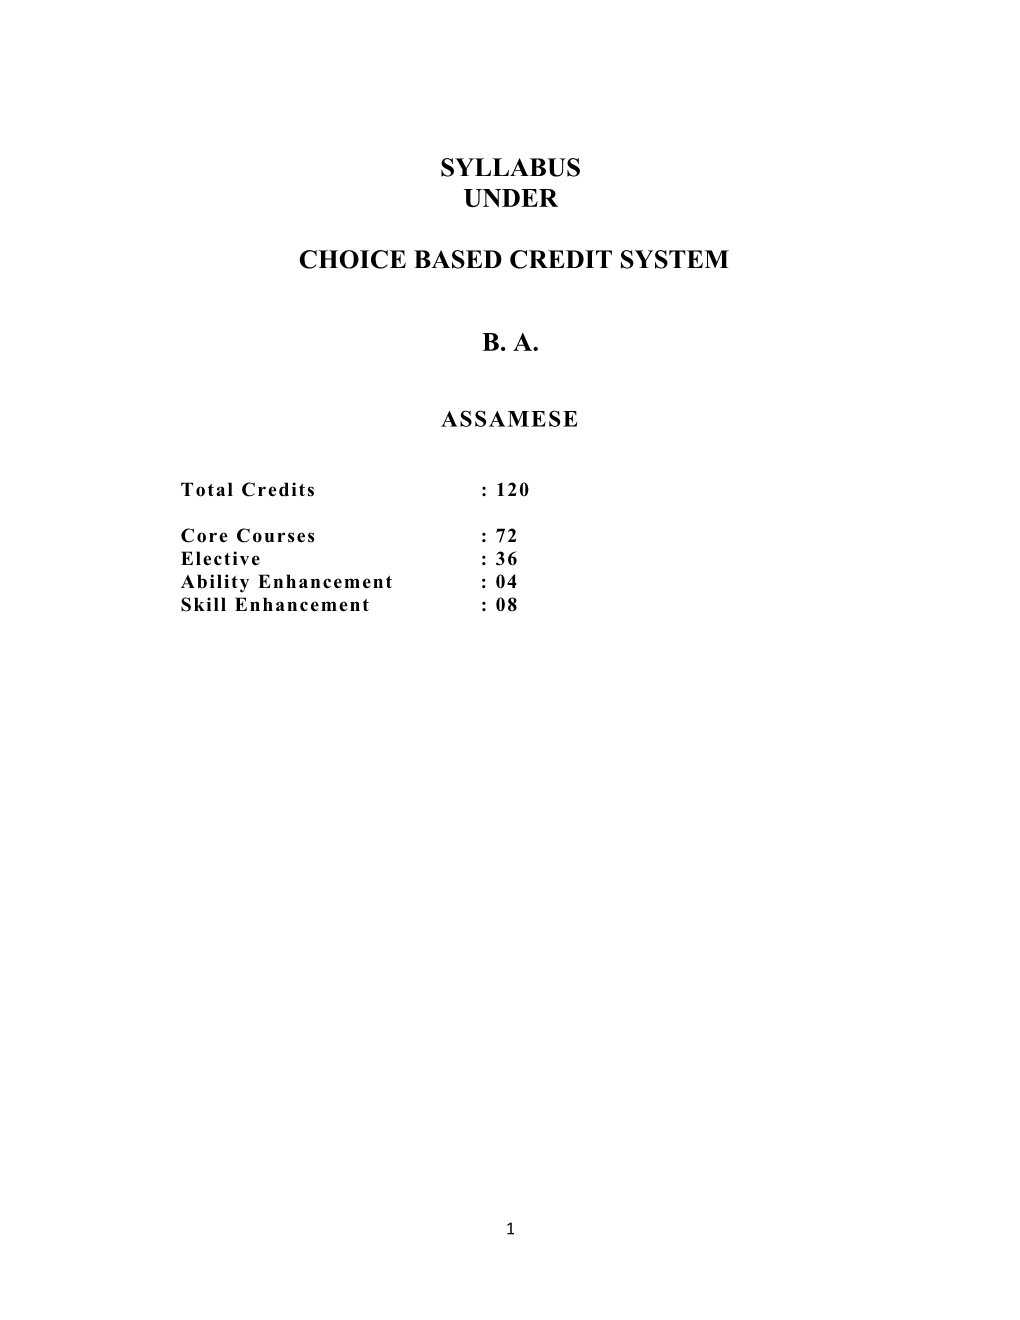 Syllabus Under Choice Based Credit System B. A